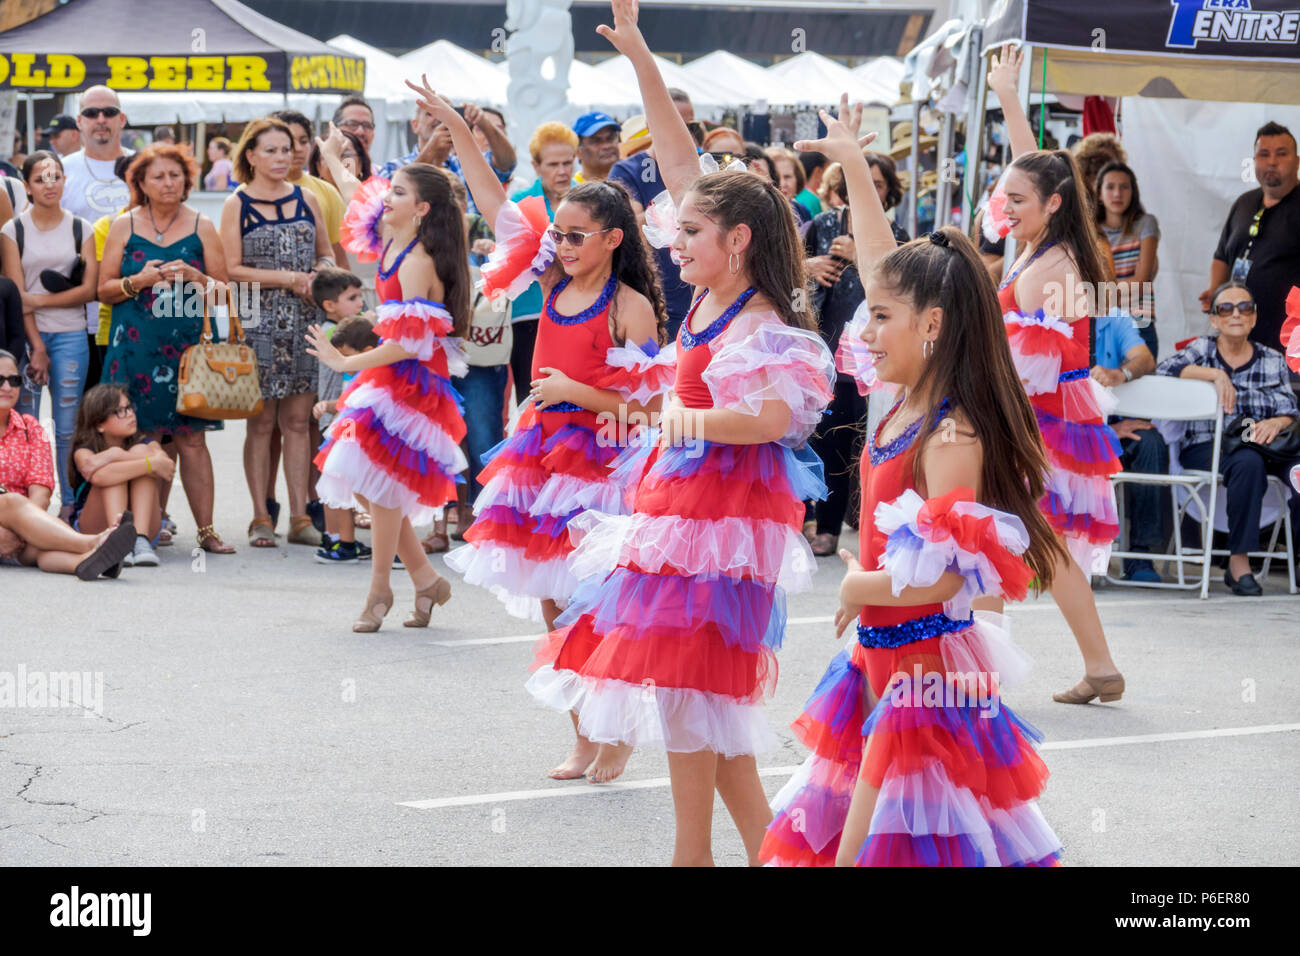 Floride,Coral Gables,Festival culturel hispanique,groupe de danse latino-américaine,danseuse interprète,danse,public,filles hispaniques,gamin féminin Banque D'Images